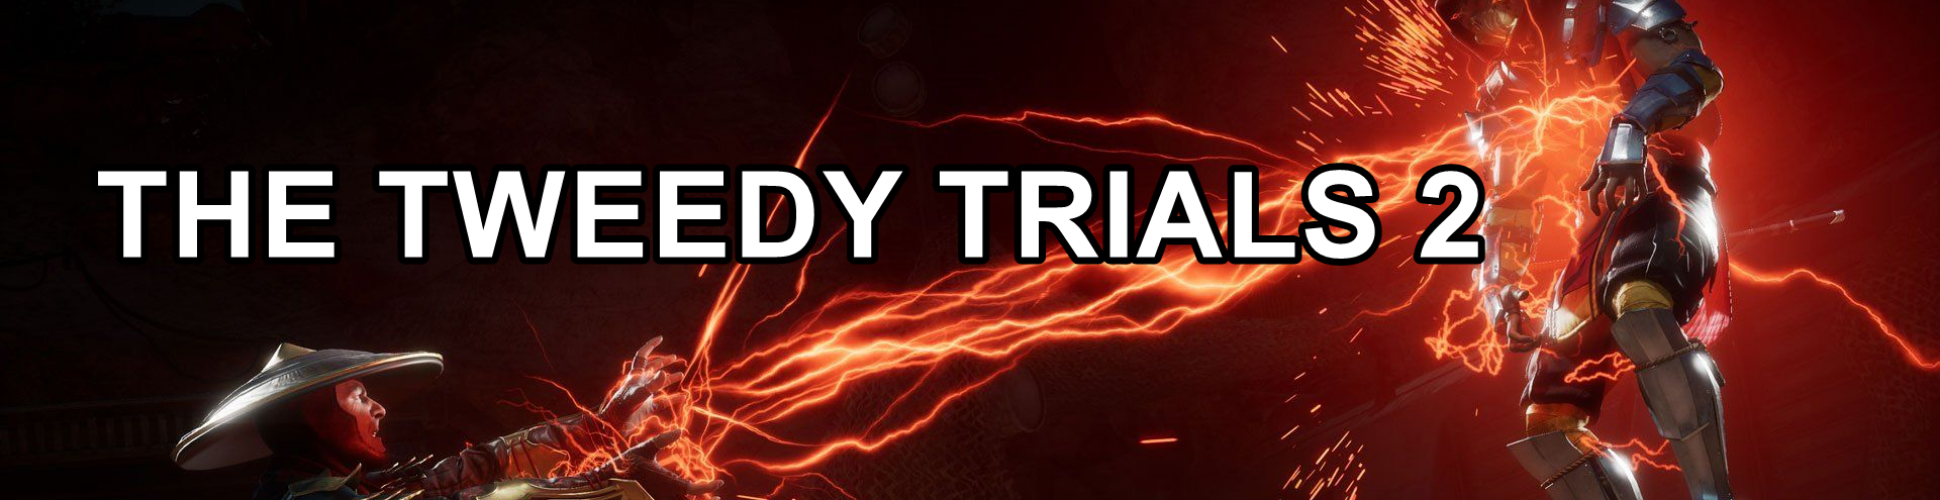 The Tweedy Trials 2